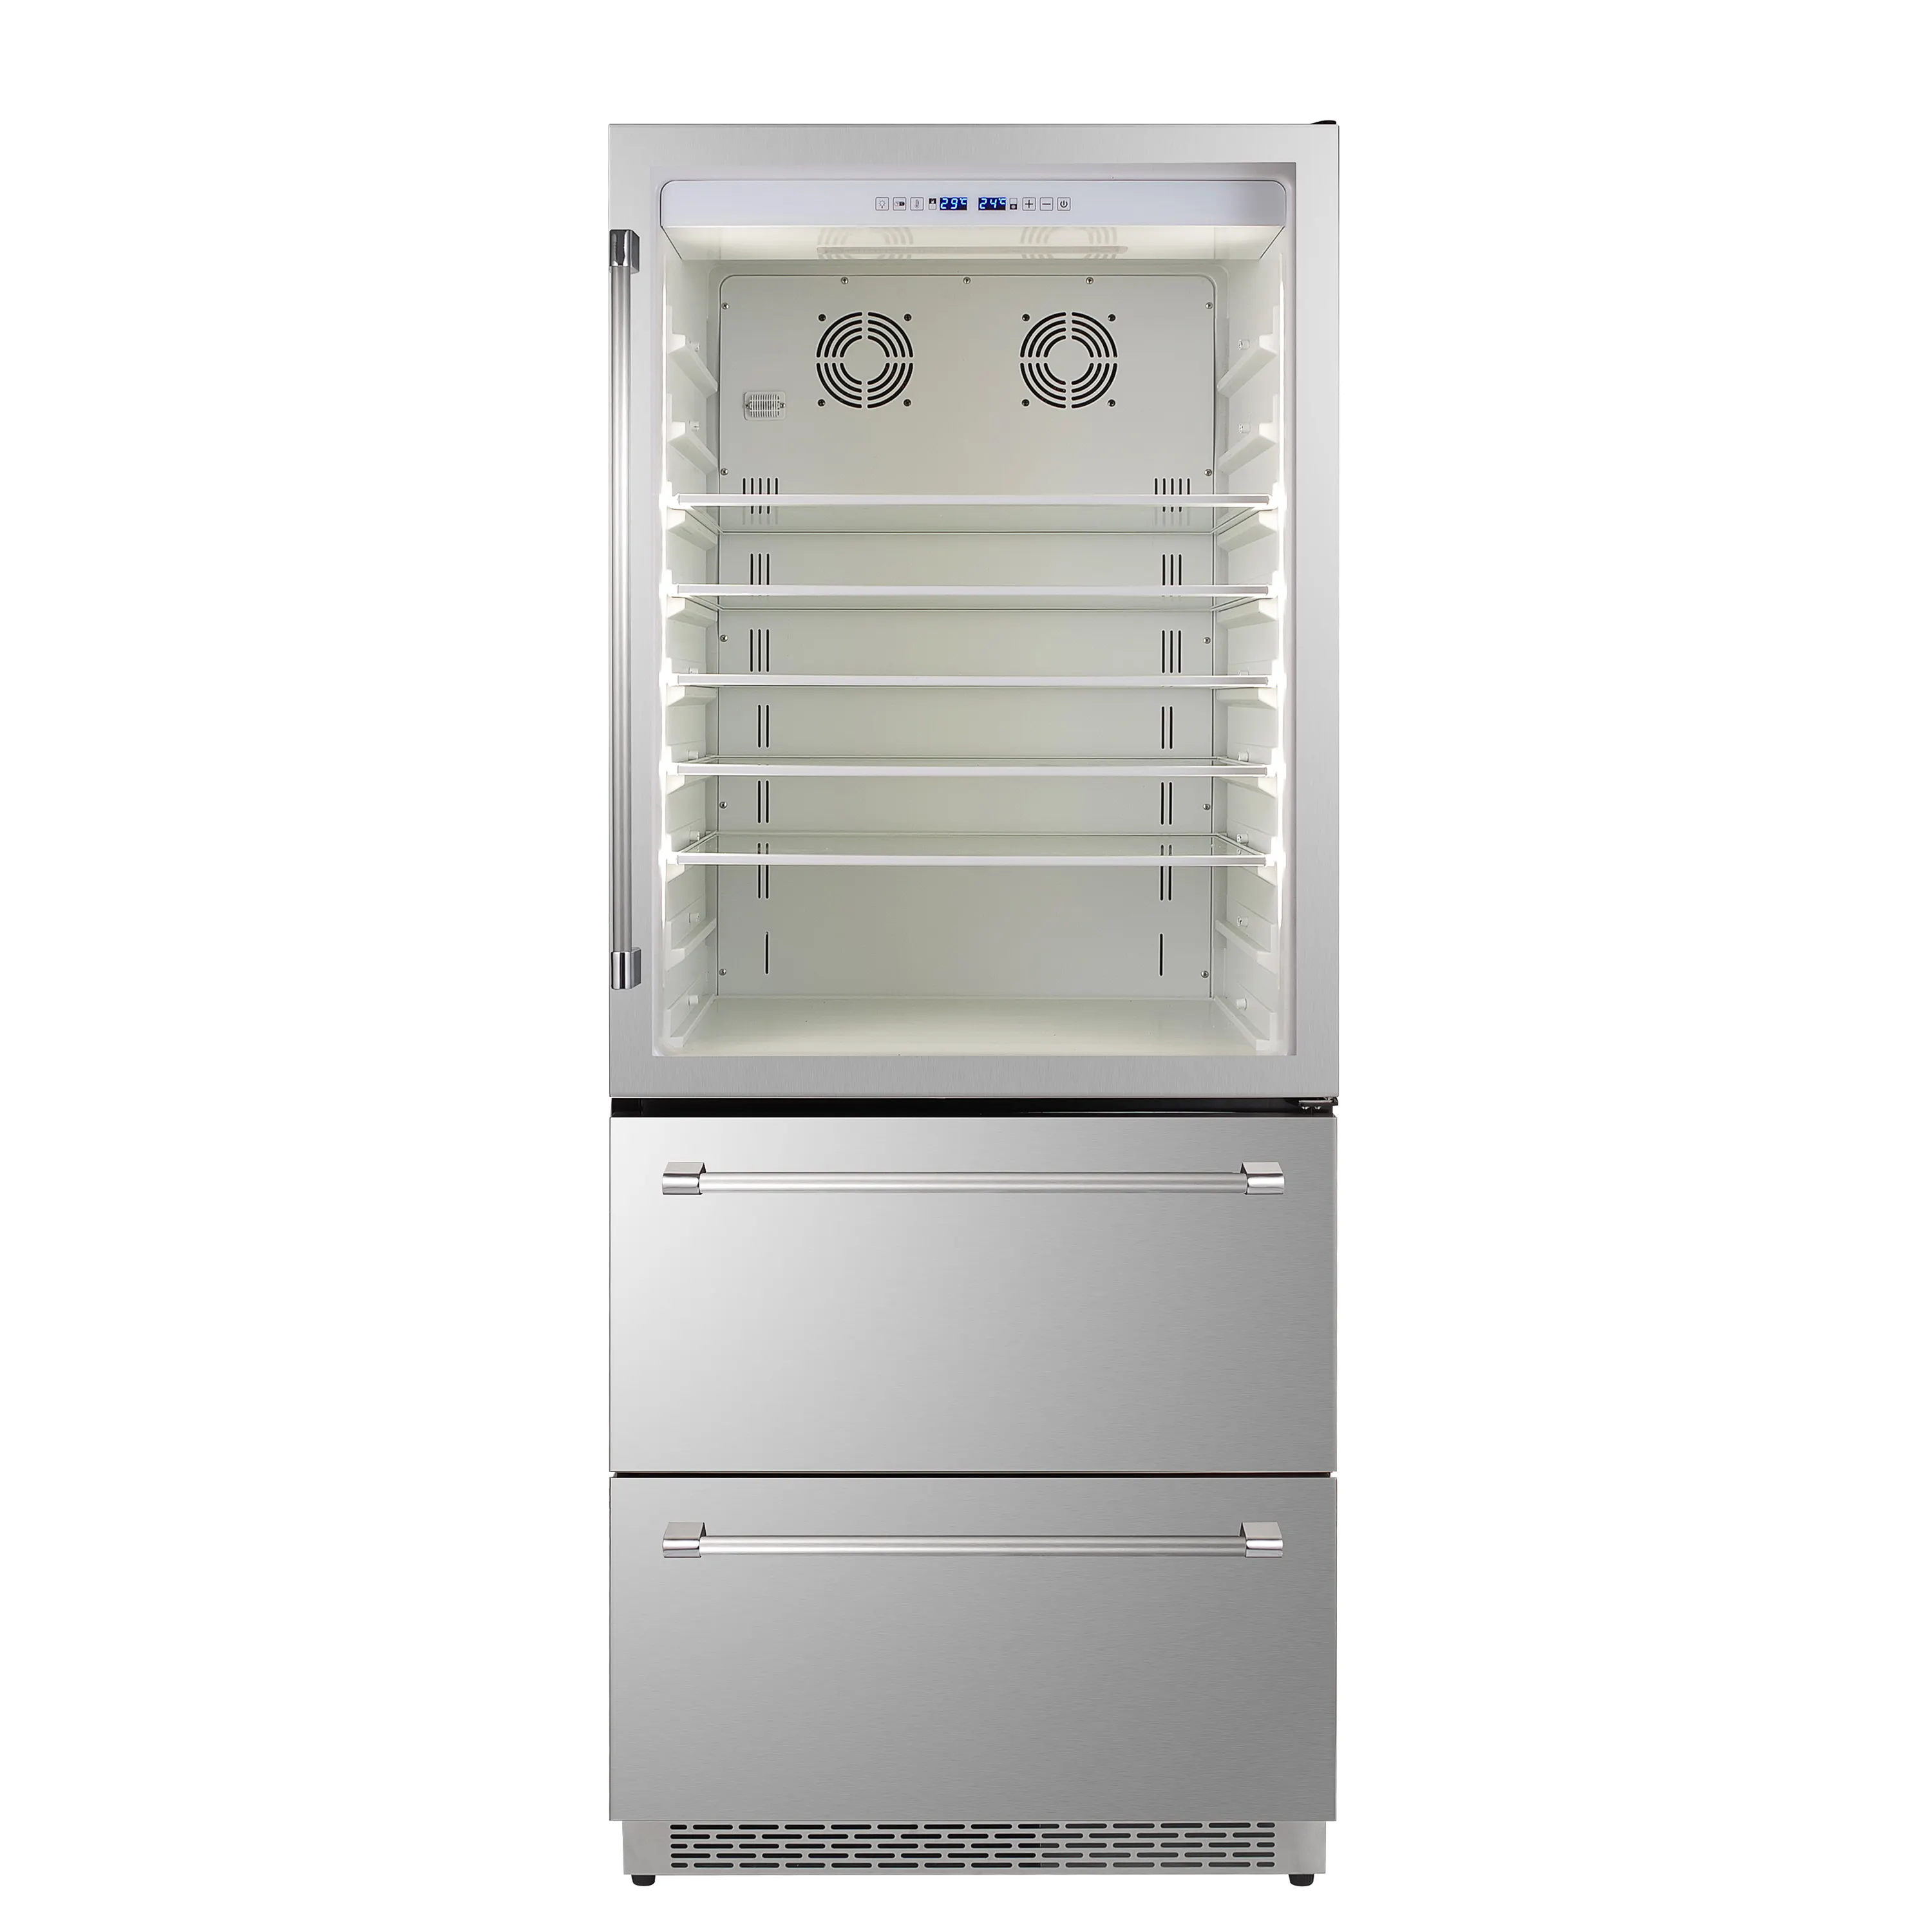 Được xây dựng trong tủ lạnh phạm vi nhiệt độ rộng để lưu trữ tối ưu của thực phẩm và đồ uống.